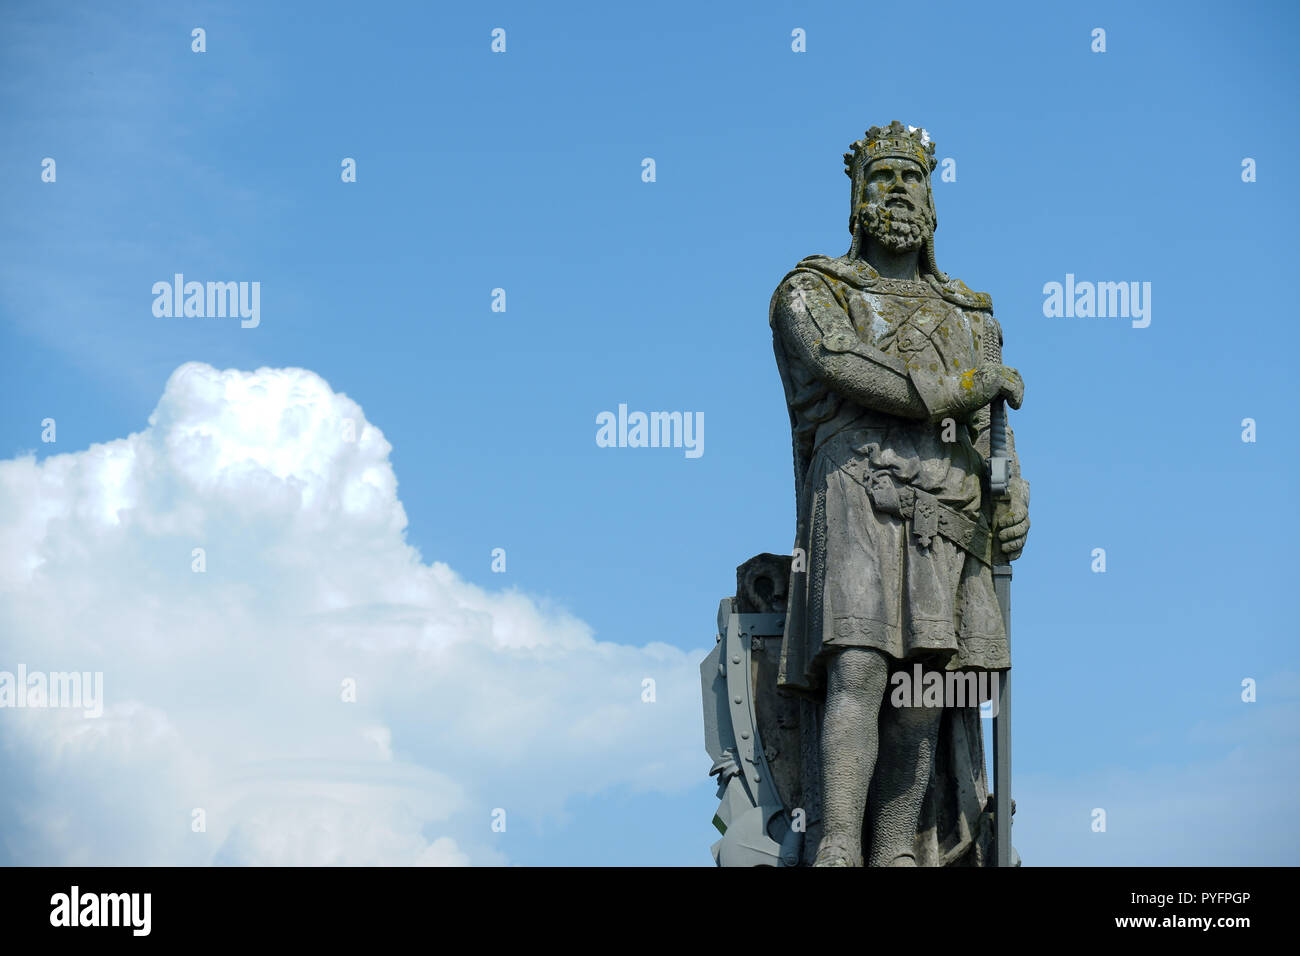 Statua di Robert the Bruce davanti al Castello di Stirling, Scozia Foto Stock